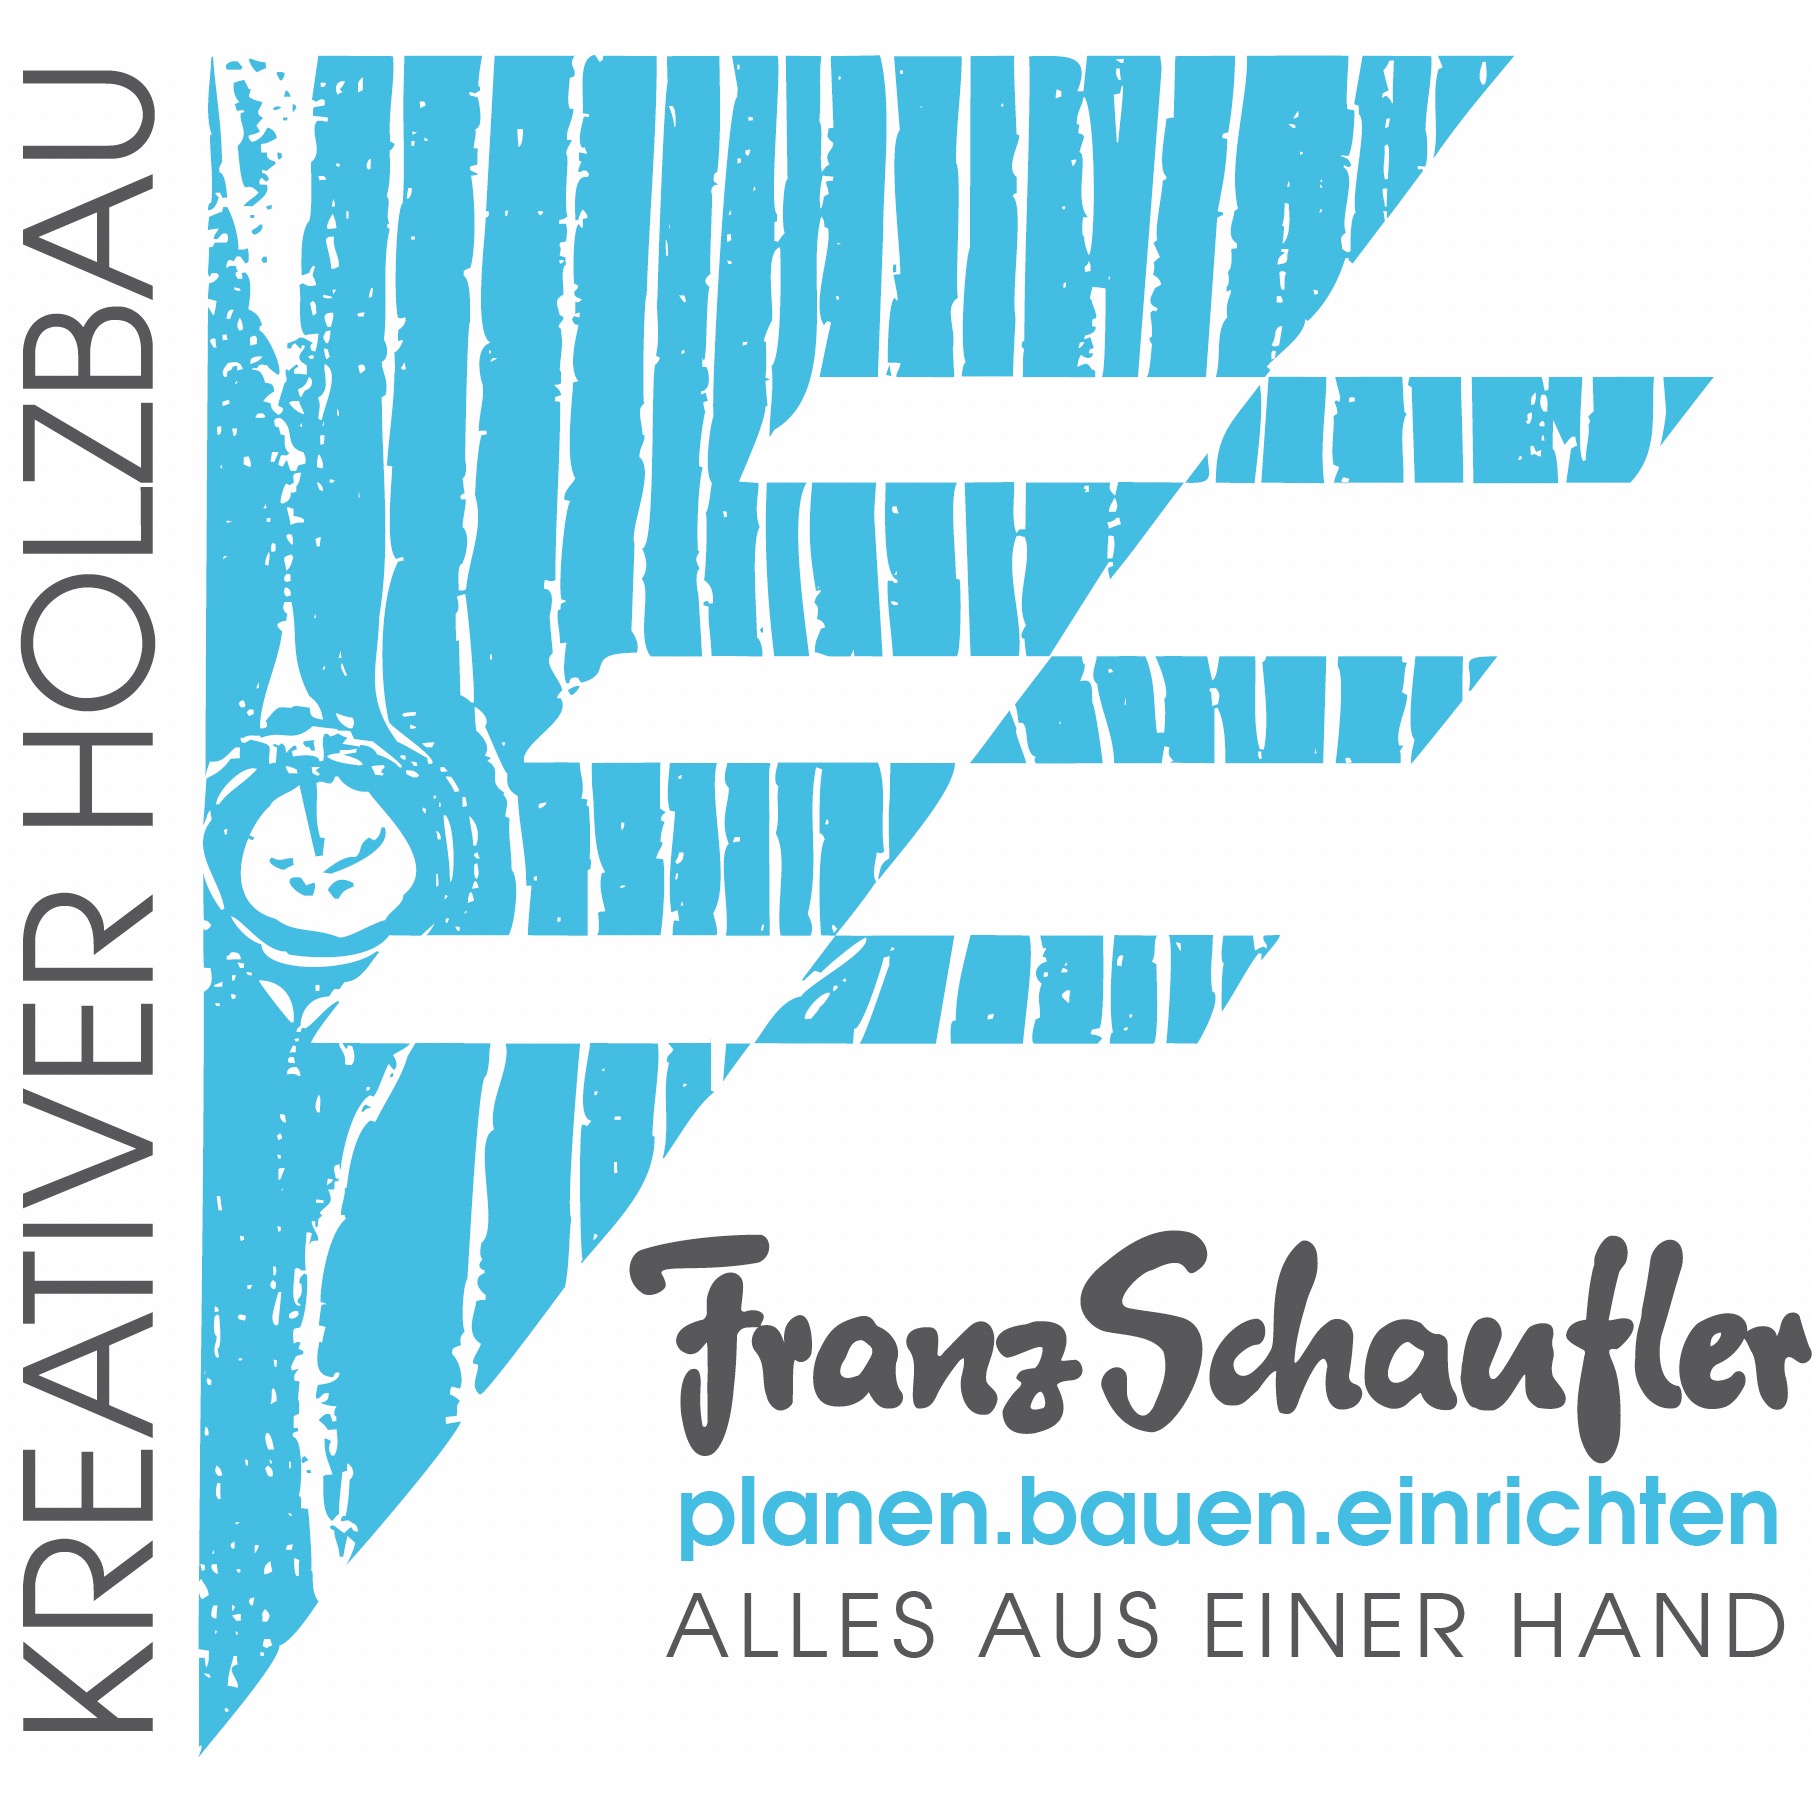 Franz Schaufler Kreativer Holzbau GmbH